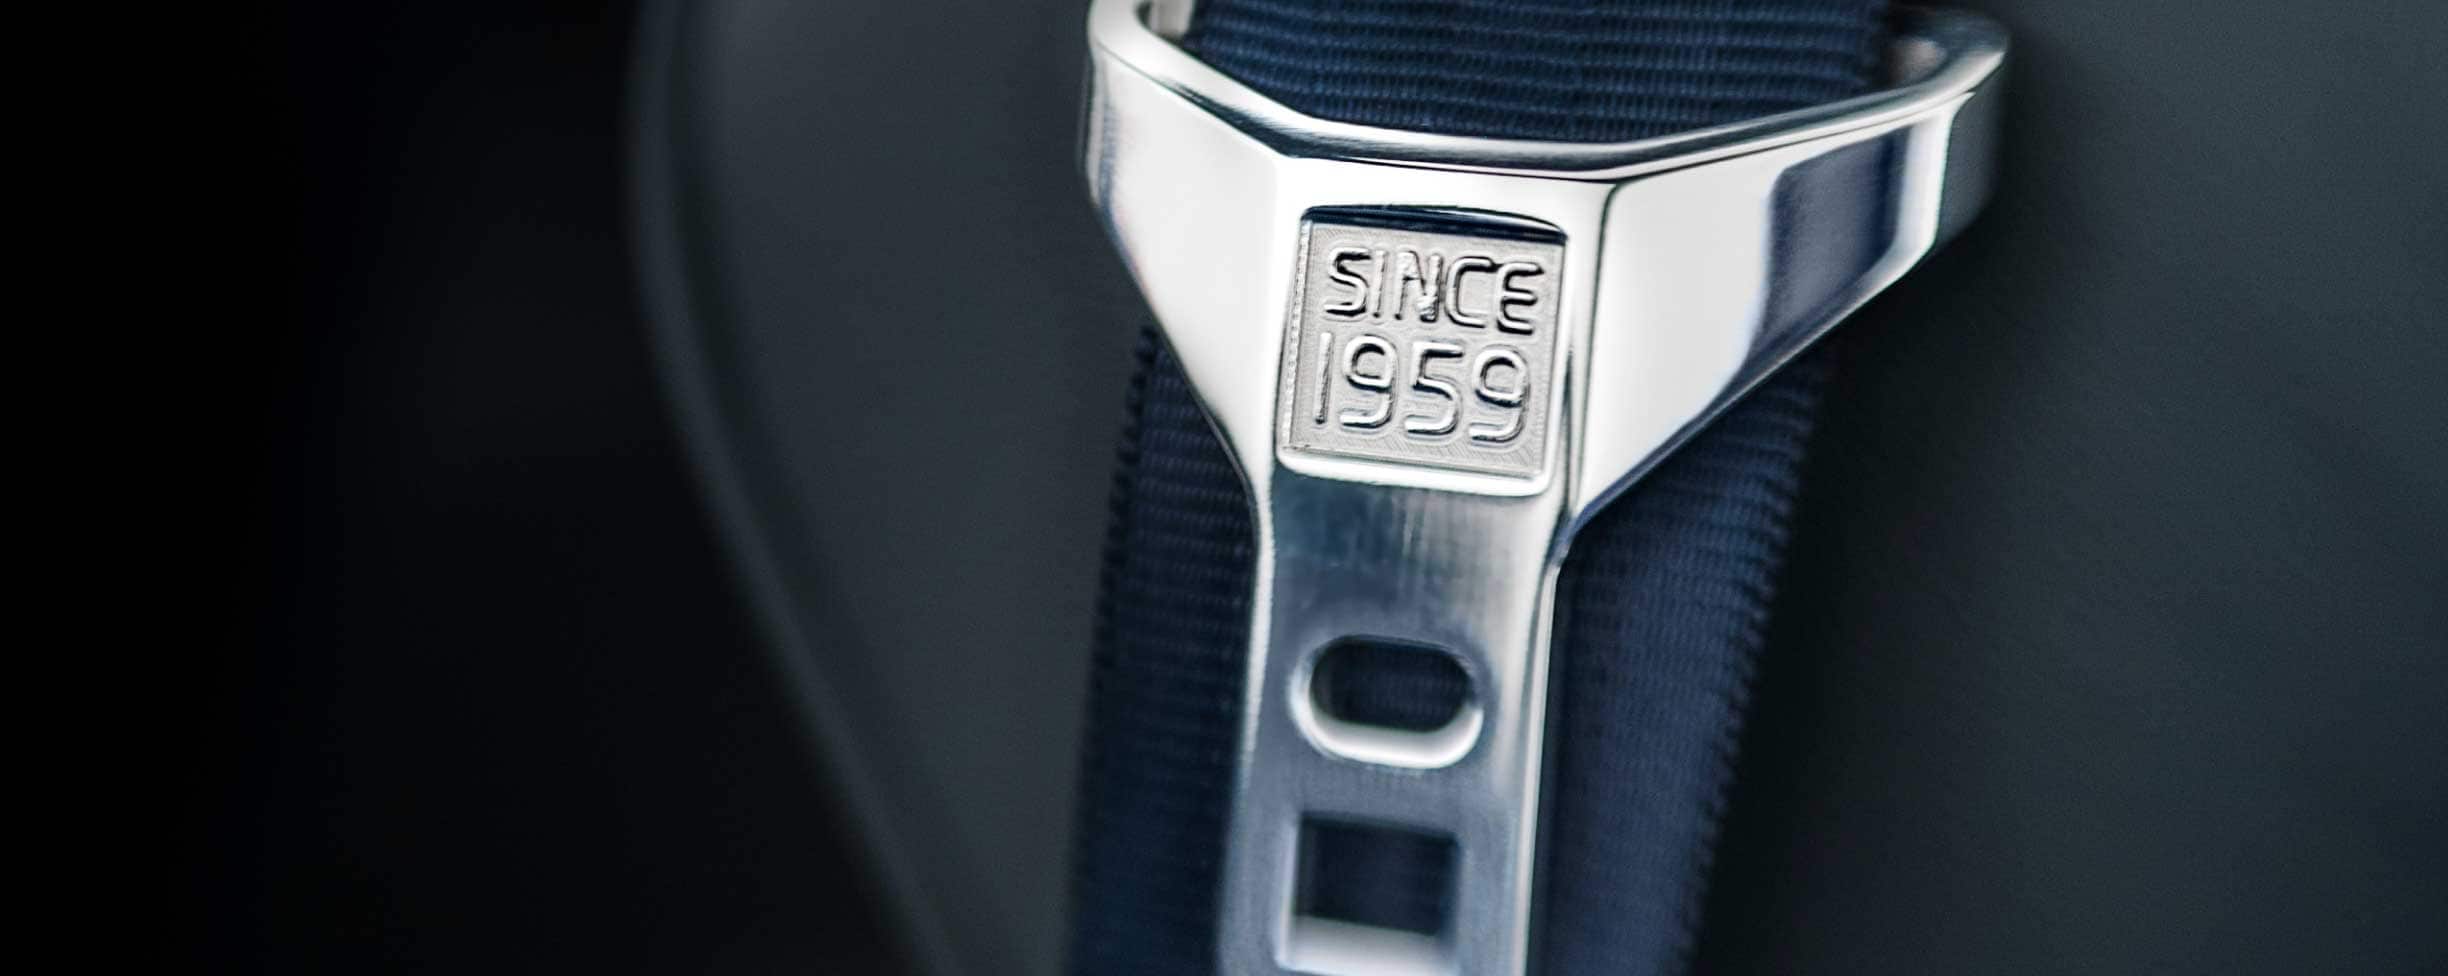 Un cinturón de seguridad de color gris con el texto "Desde 1959" inscrito en la hebilla.